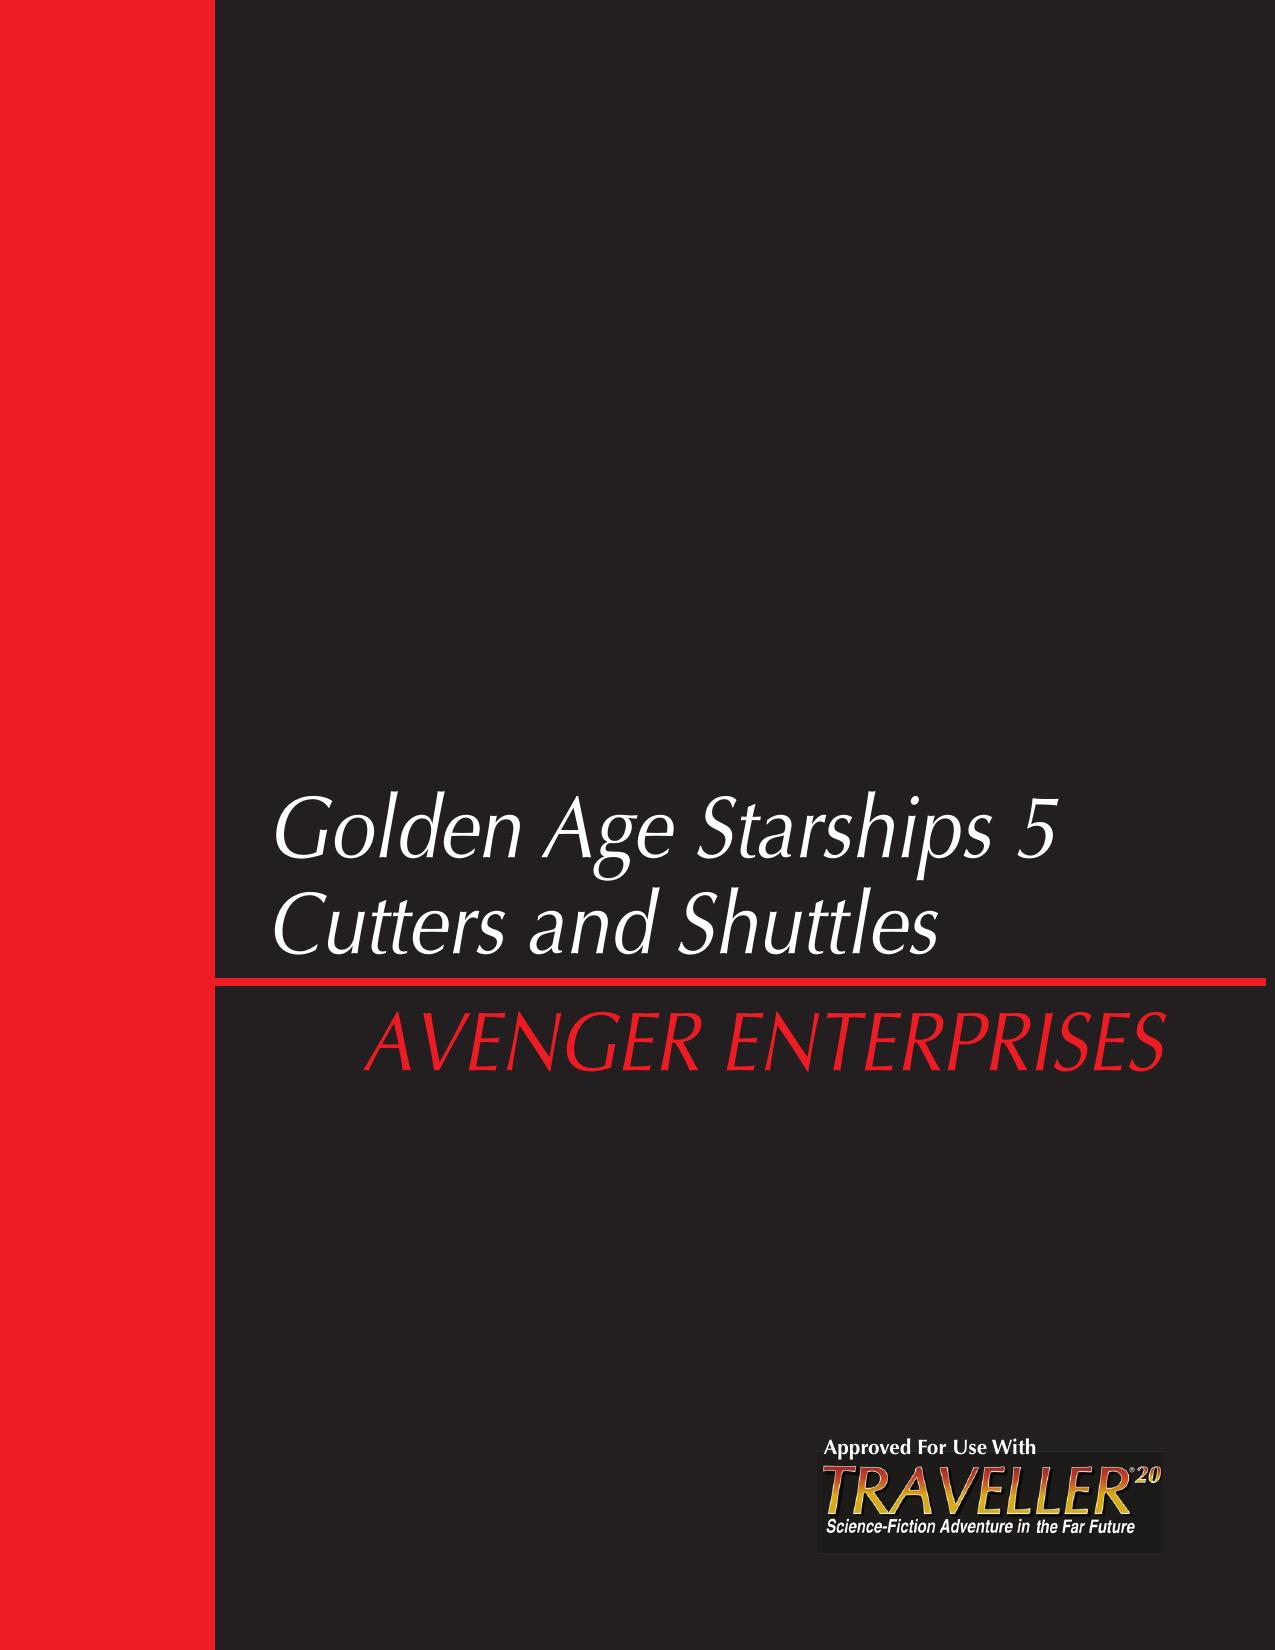 Cutters & Shuttles